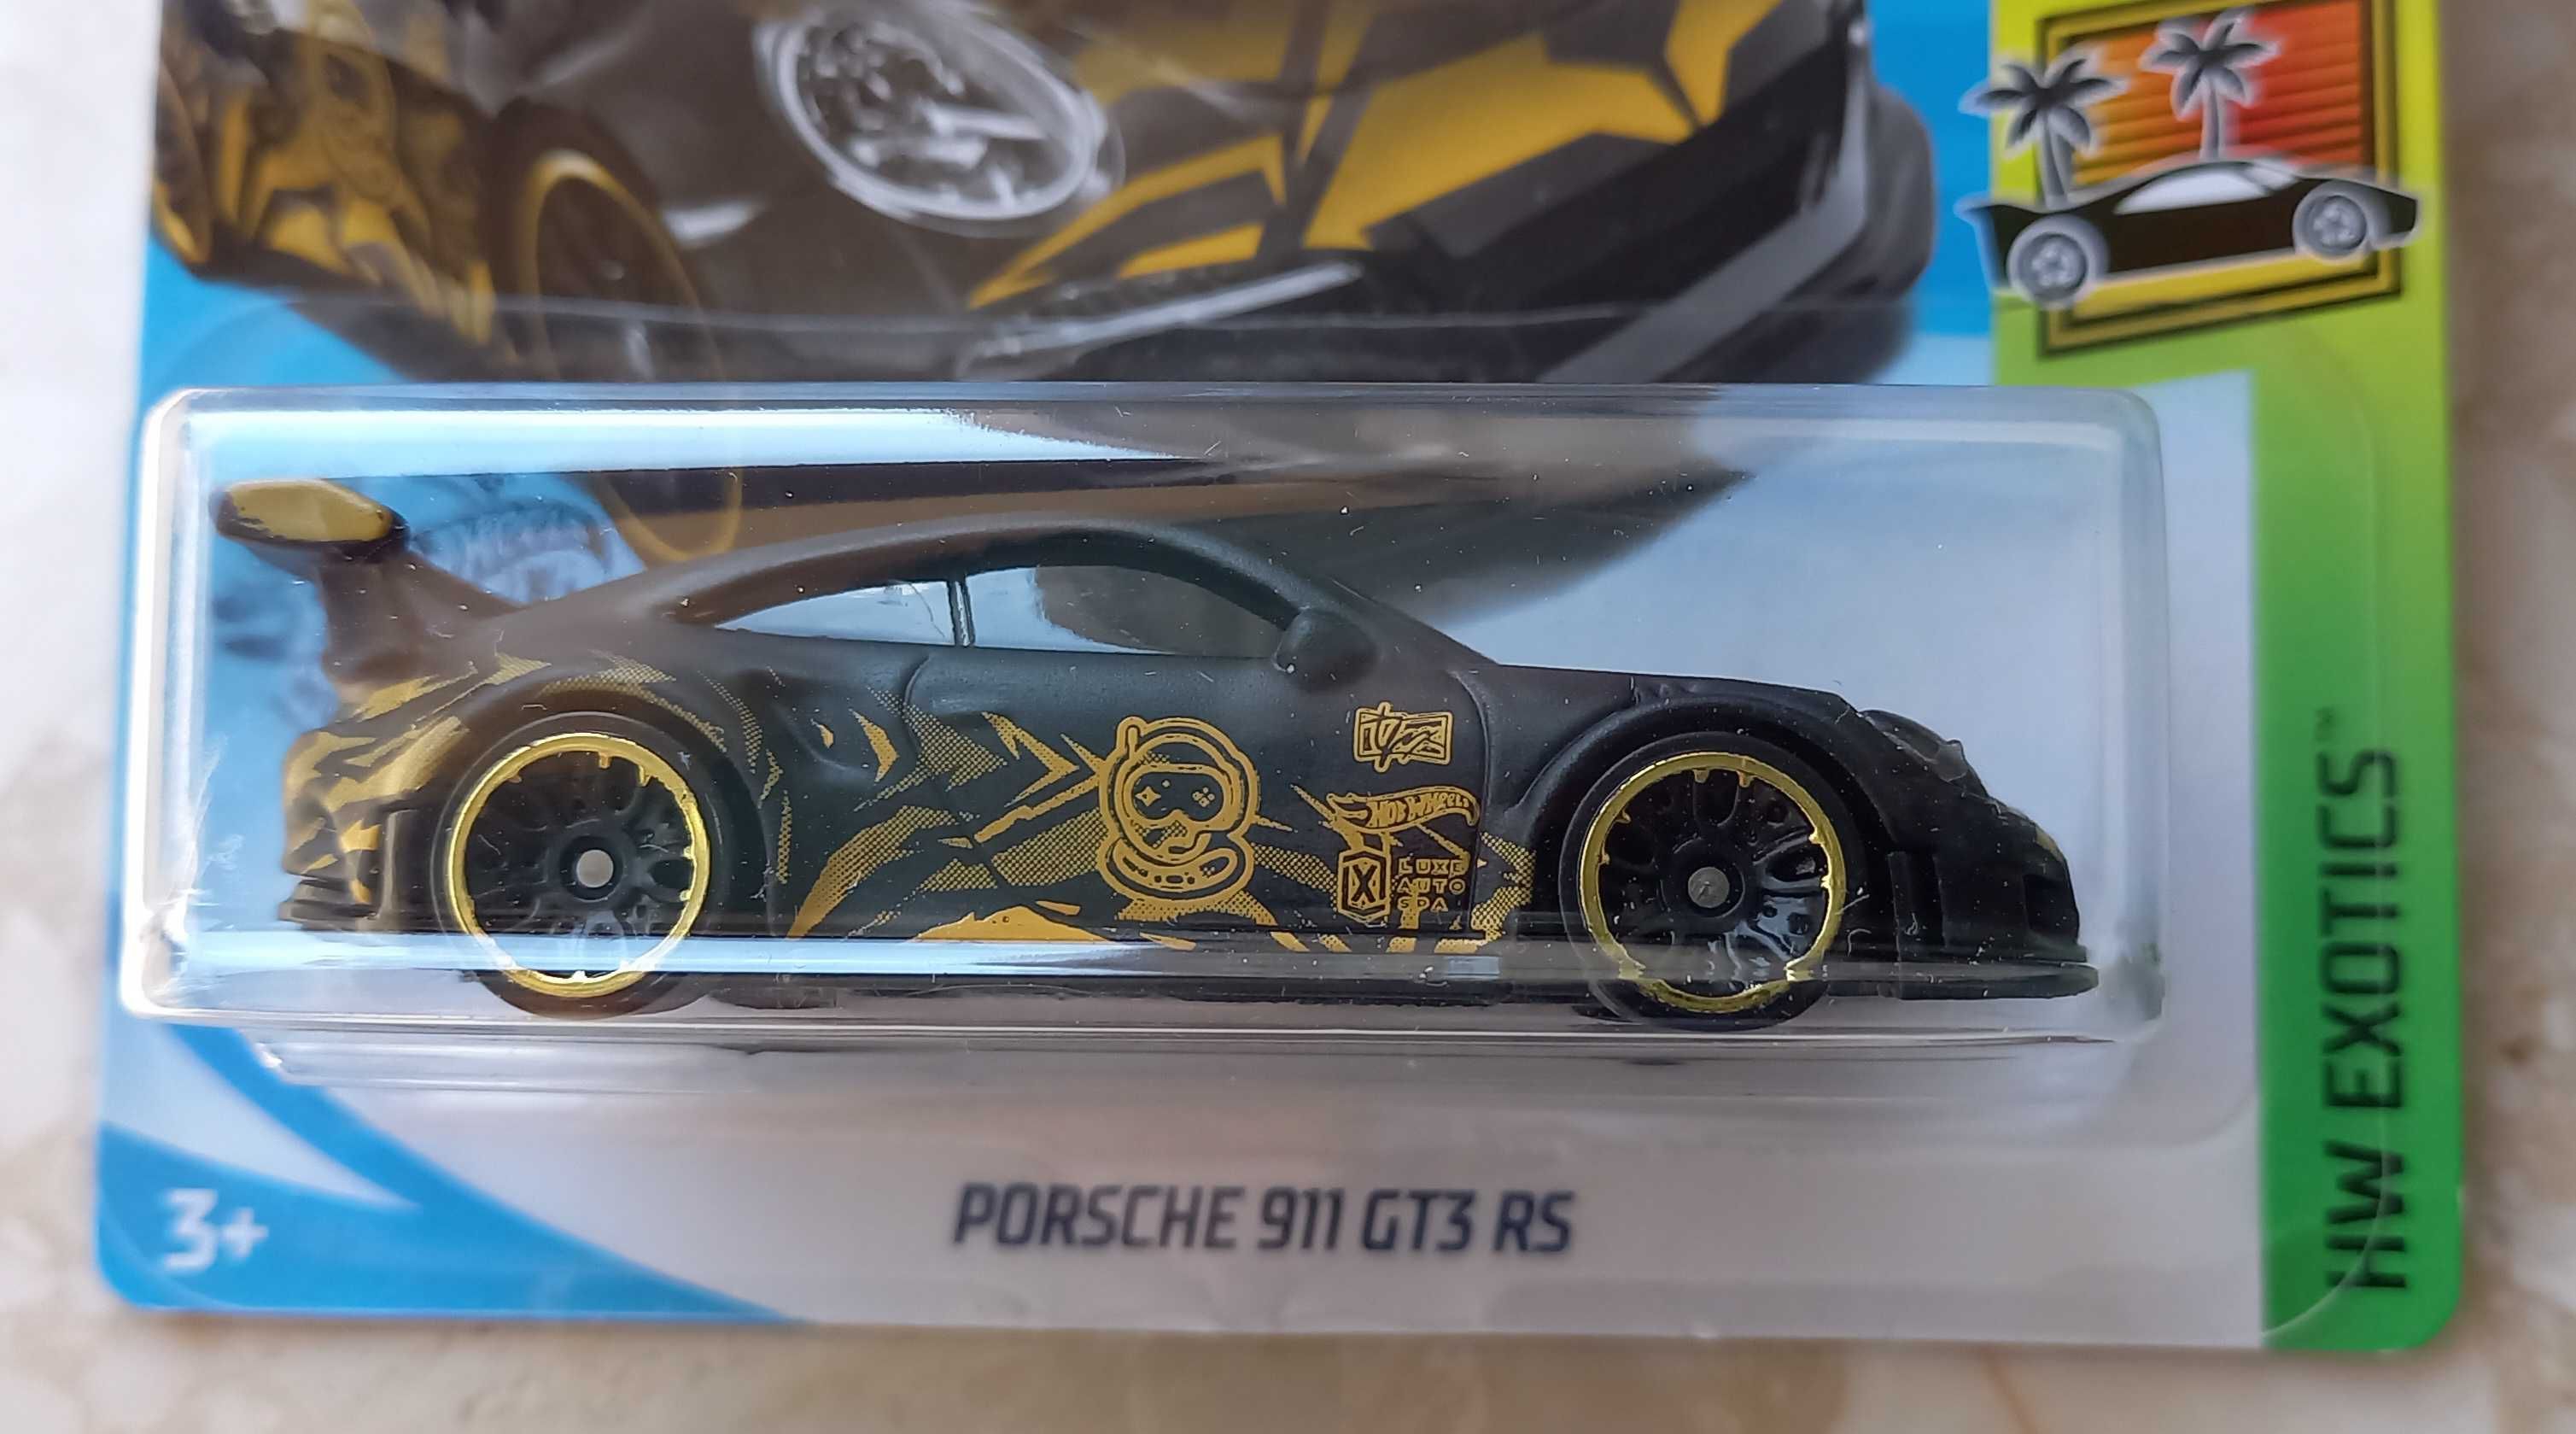 Hot Wheels __ Porsche 911 GT3 RS __